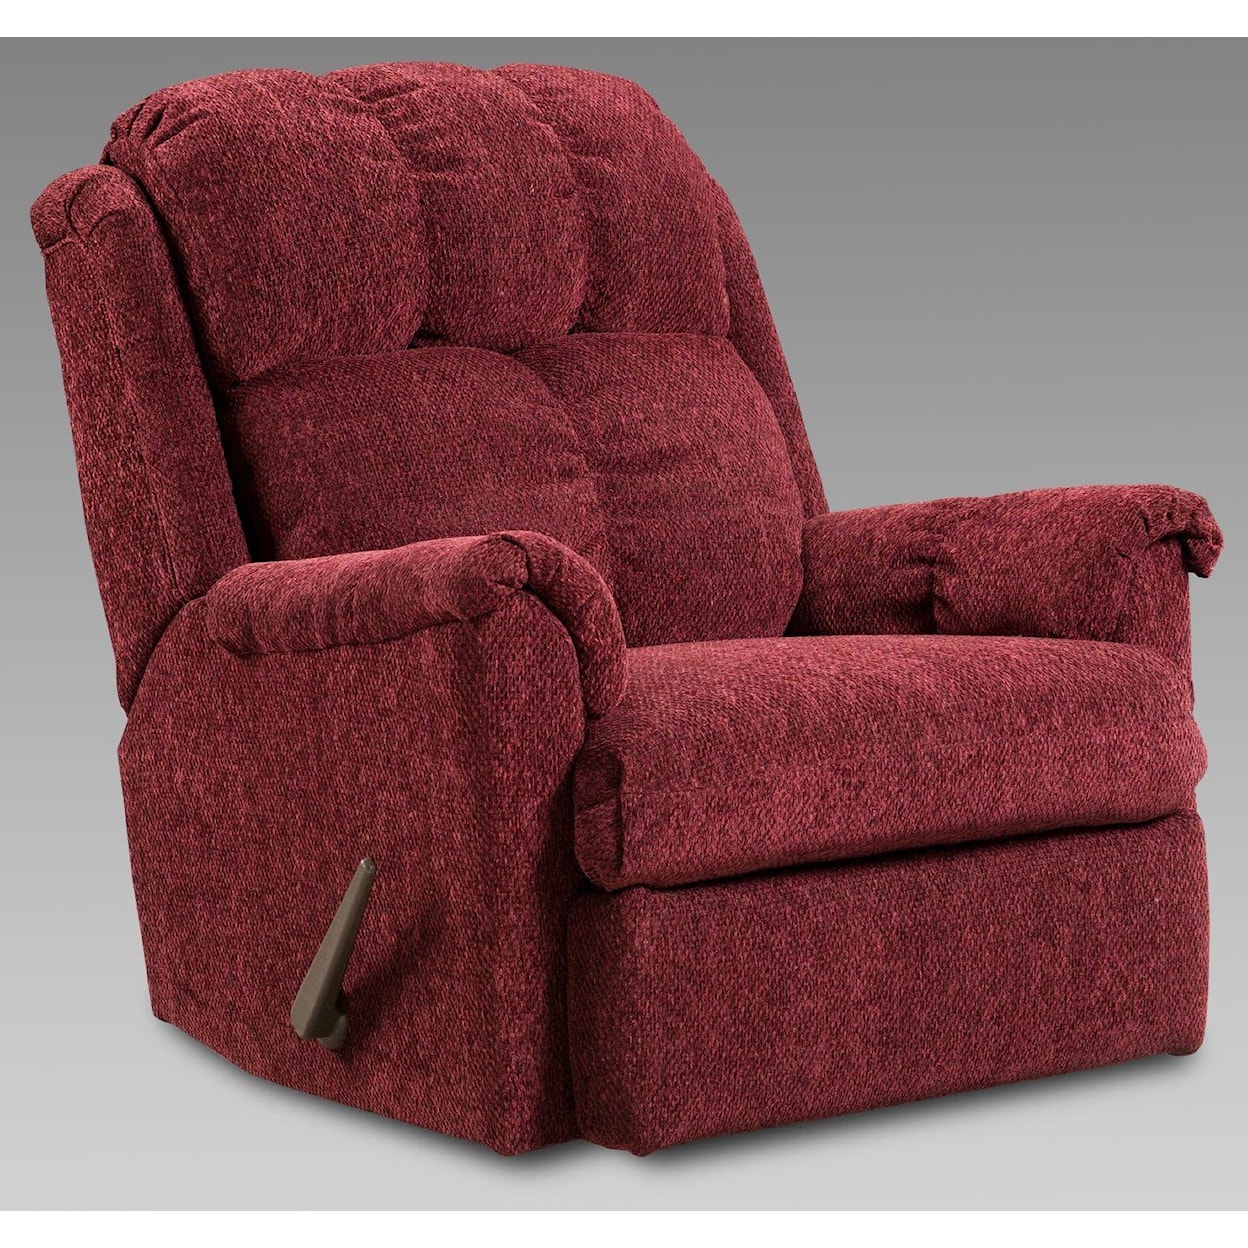 Affordable Furniture Afford MFG All 2110 Rocker Recliner